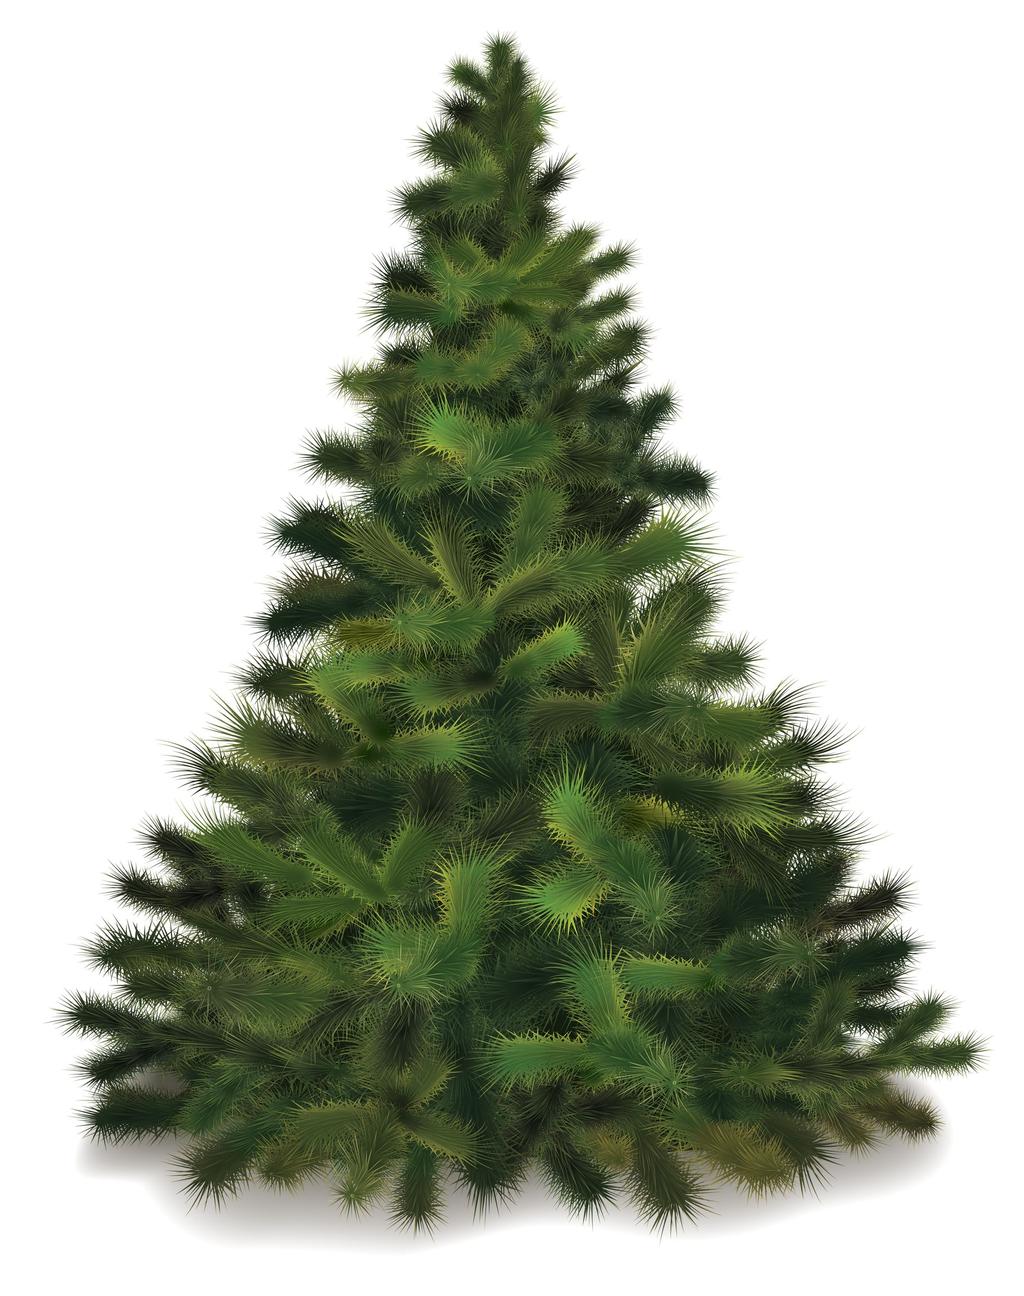 The Christmas tree lore ENRICHING